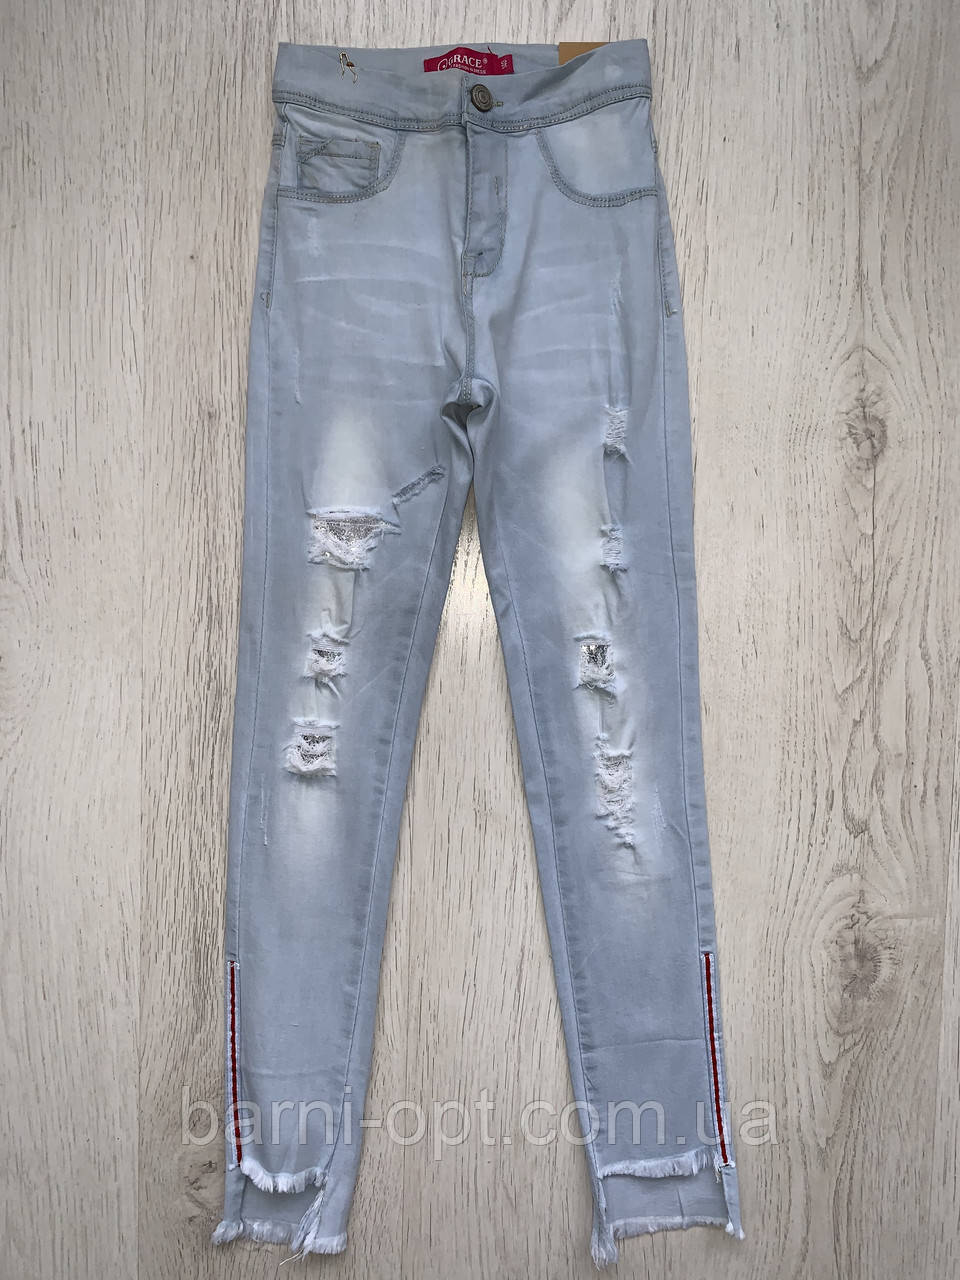 Джинсові брюки для дівчаток, Grace , в наявності 140 рр.